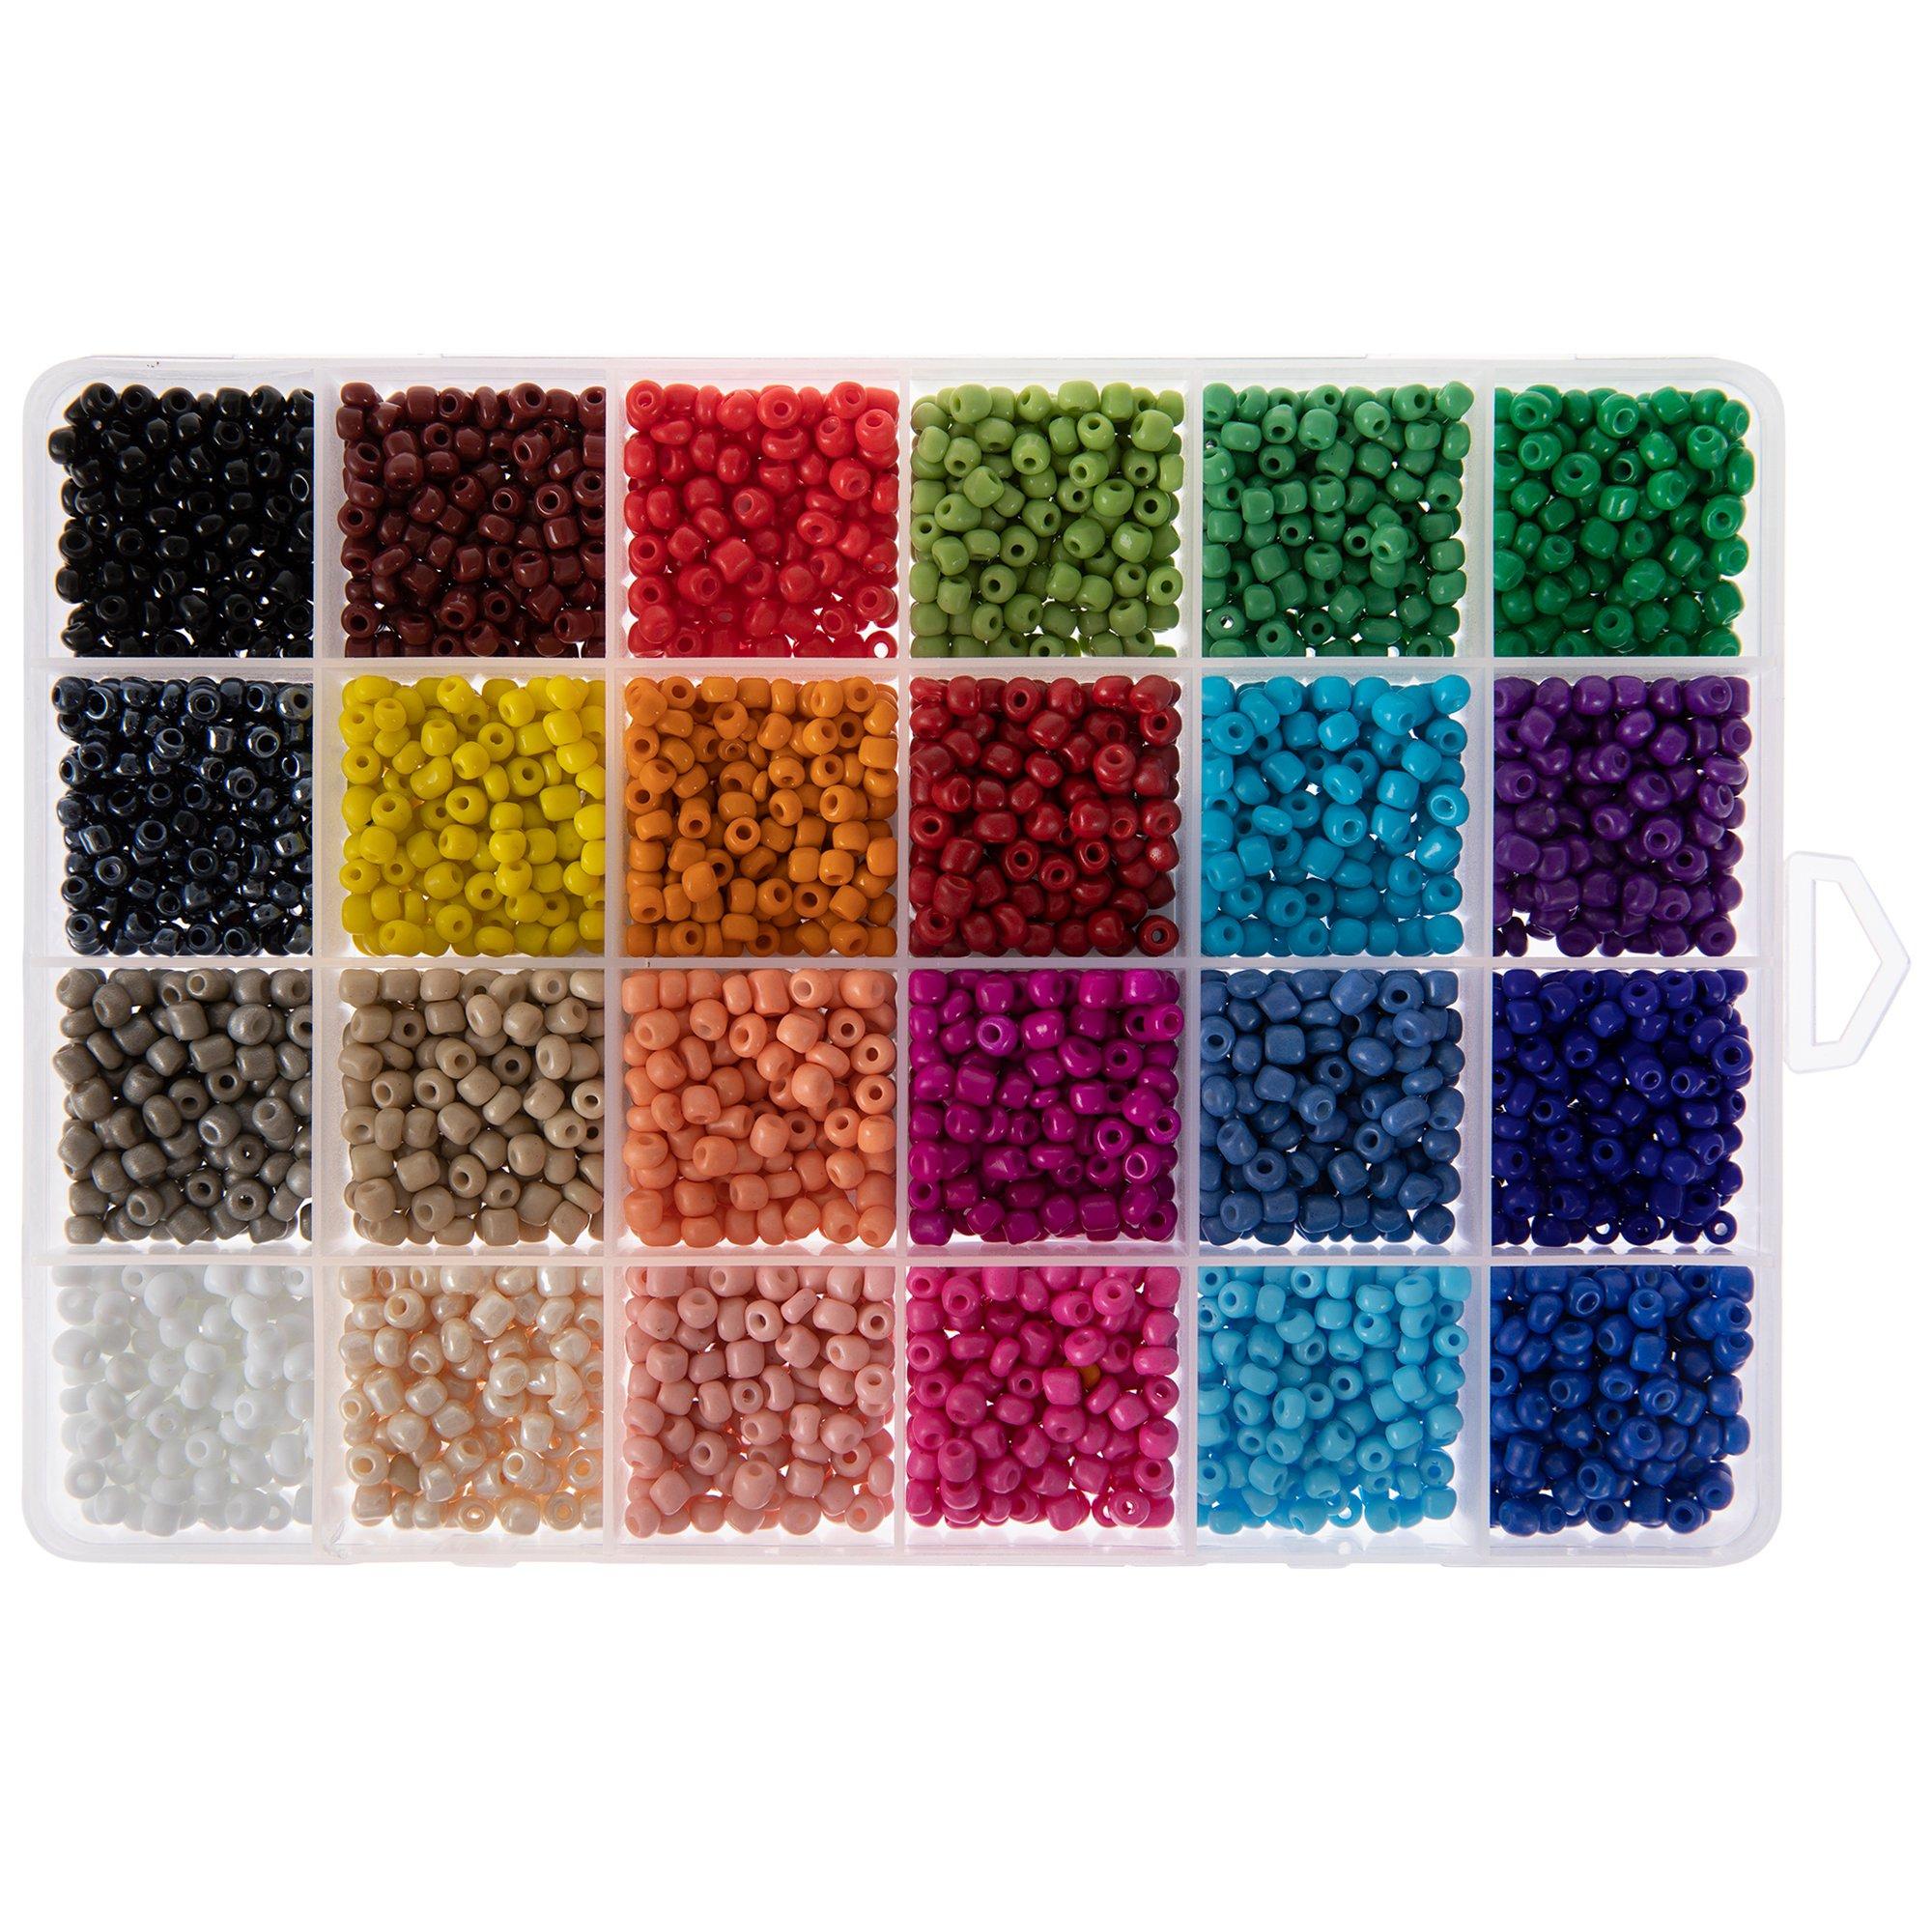 Perler Bead Mania Fused Bead Kit